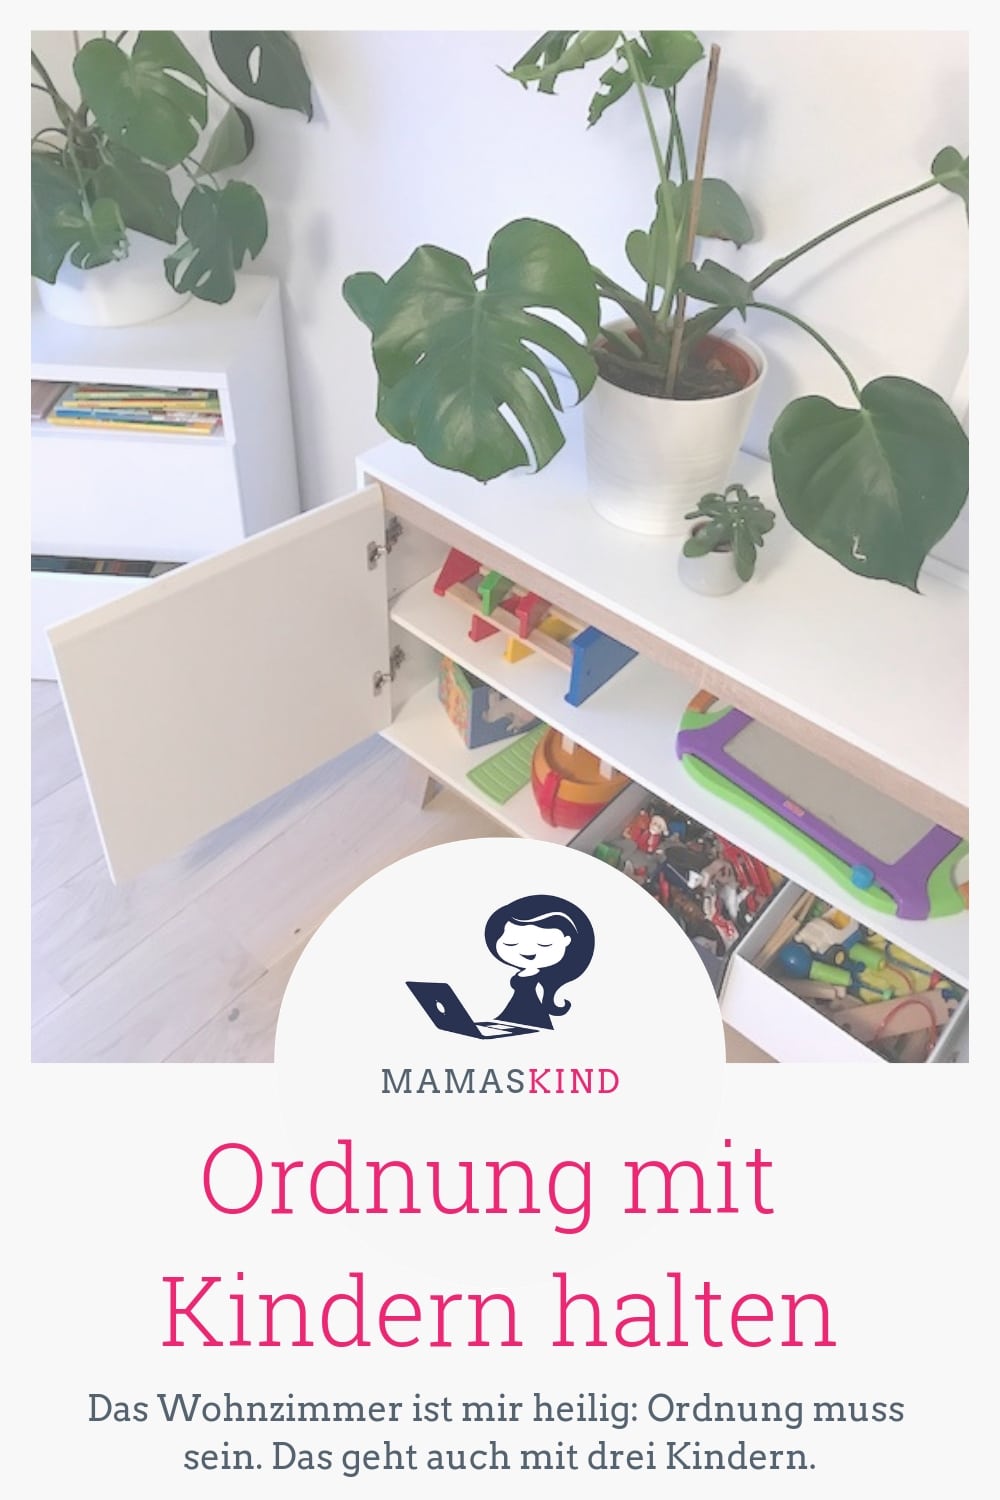 Ordnung mit Kindern halten: das ist bei uns im Wohnzimmer unbedingt erwünscht. | Mehr Infos auf Mamaskind.de